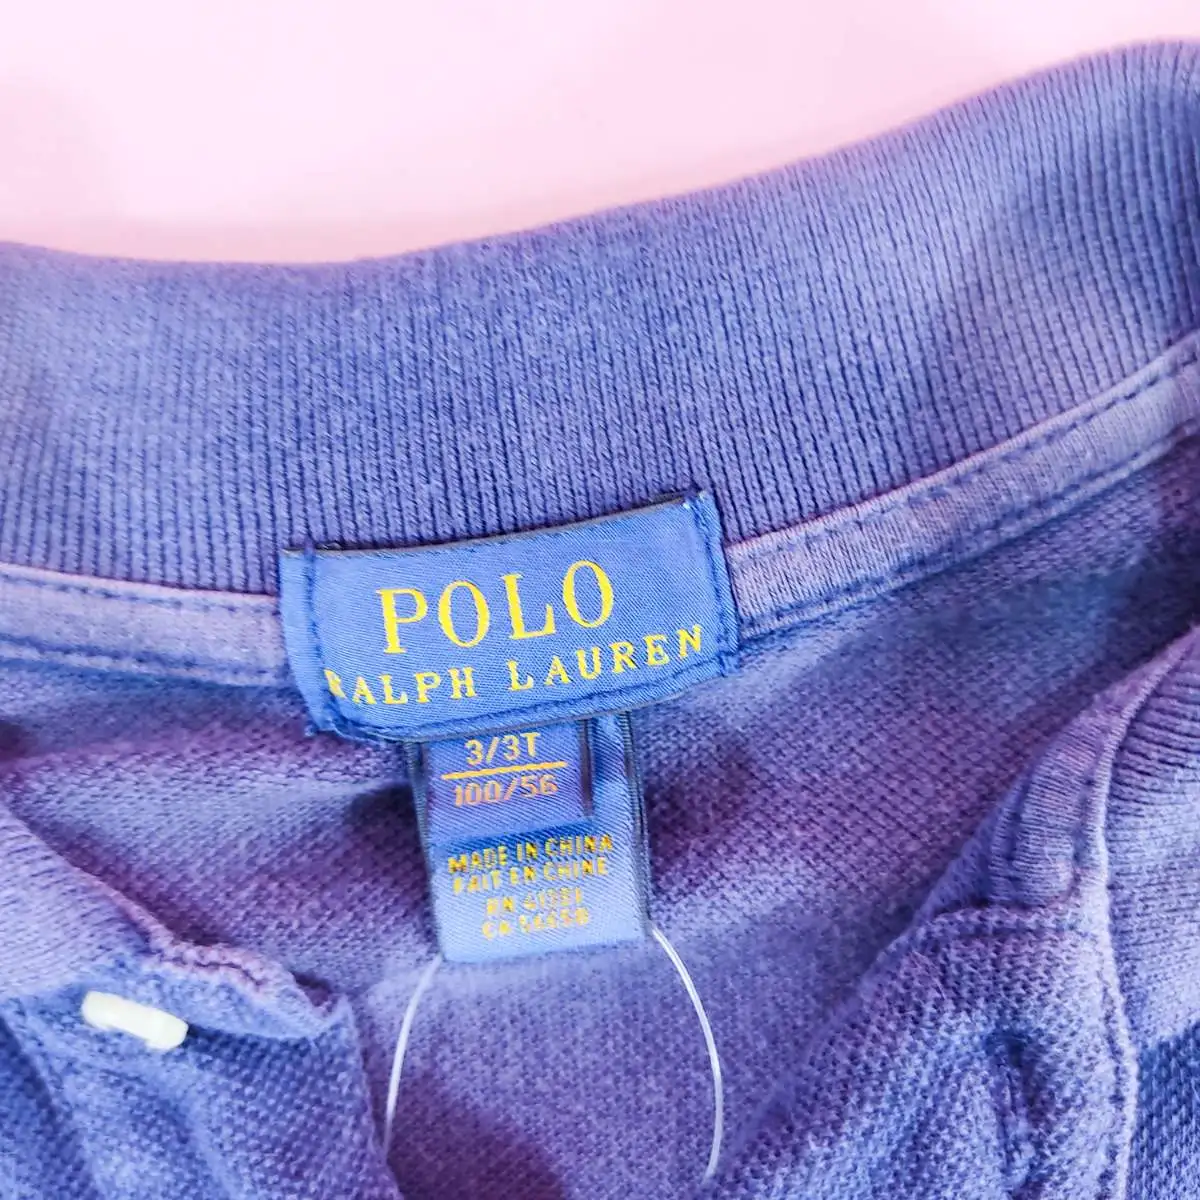 Polo Ralph Lauren เสื้อโปโลแขนยาวสีกรม 3/3T